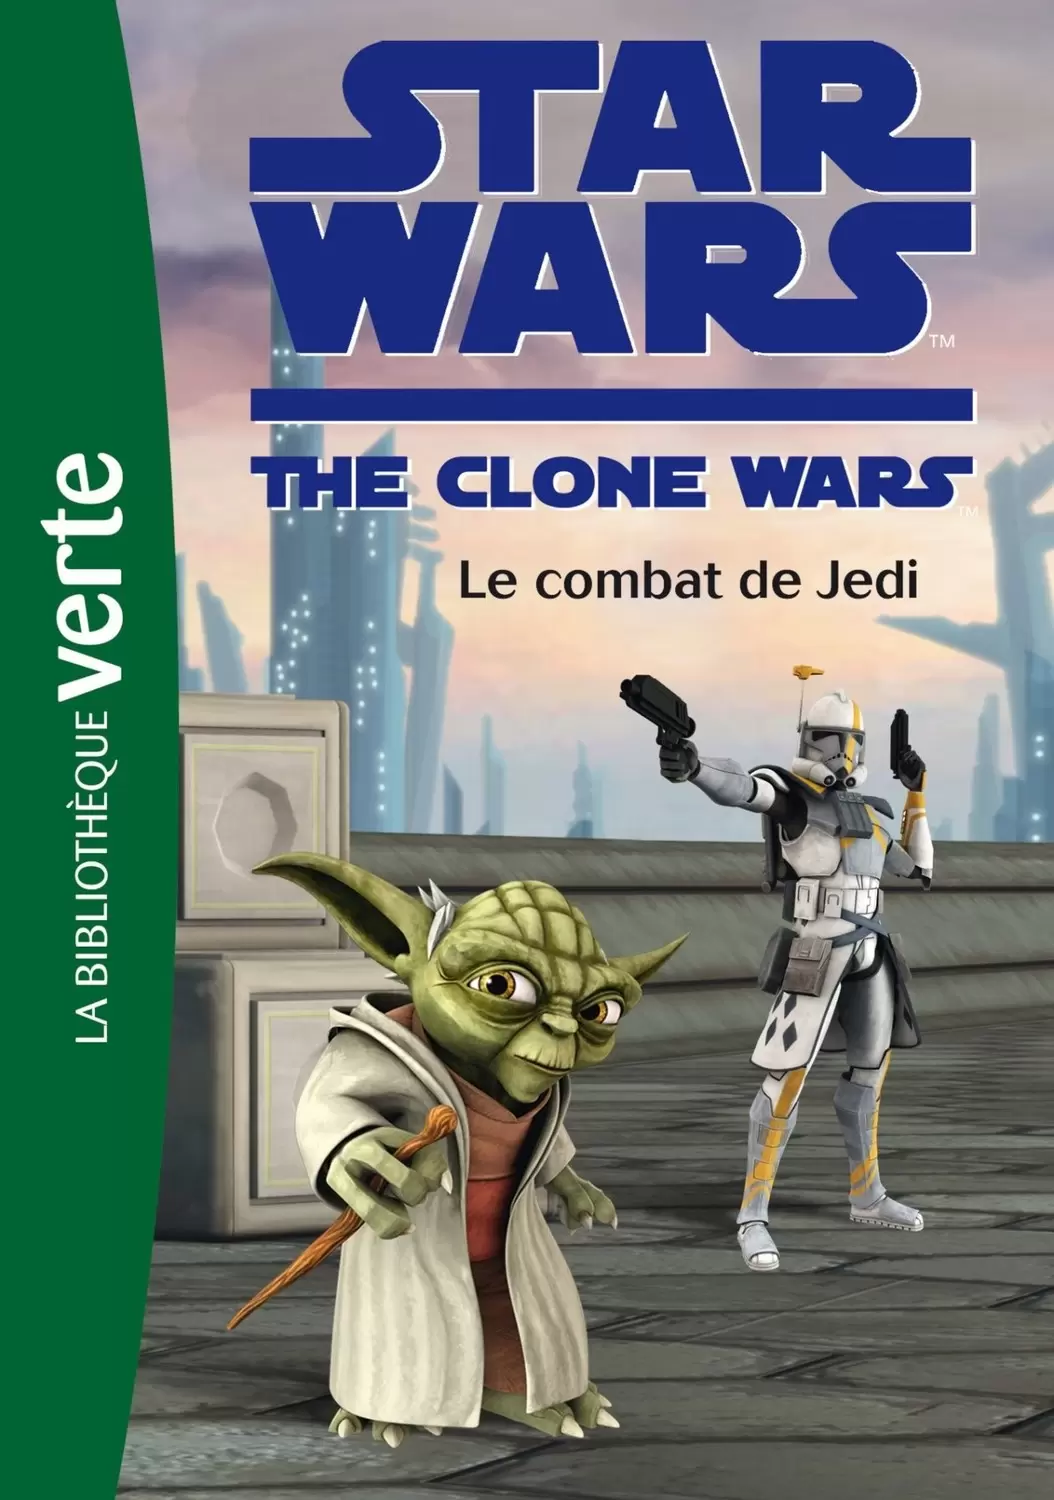 Star Wars The Clone Wars - Le combat de Jedi